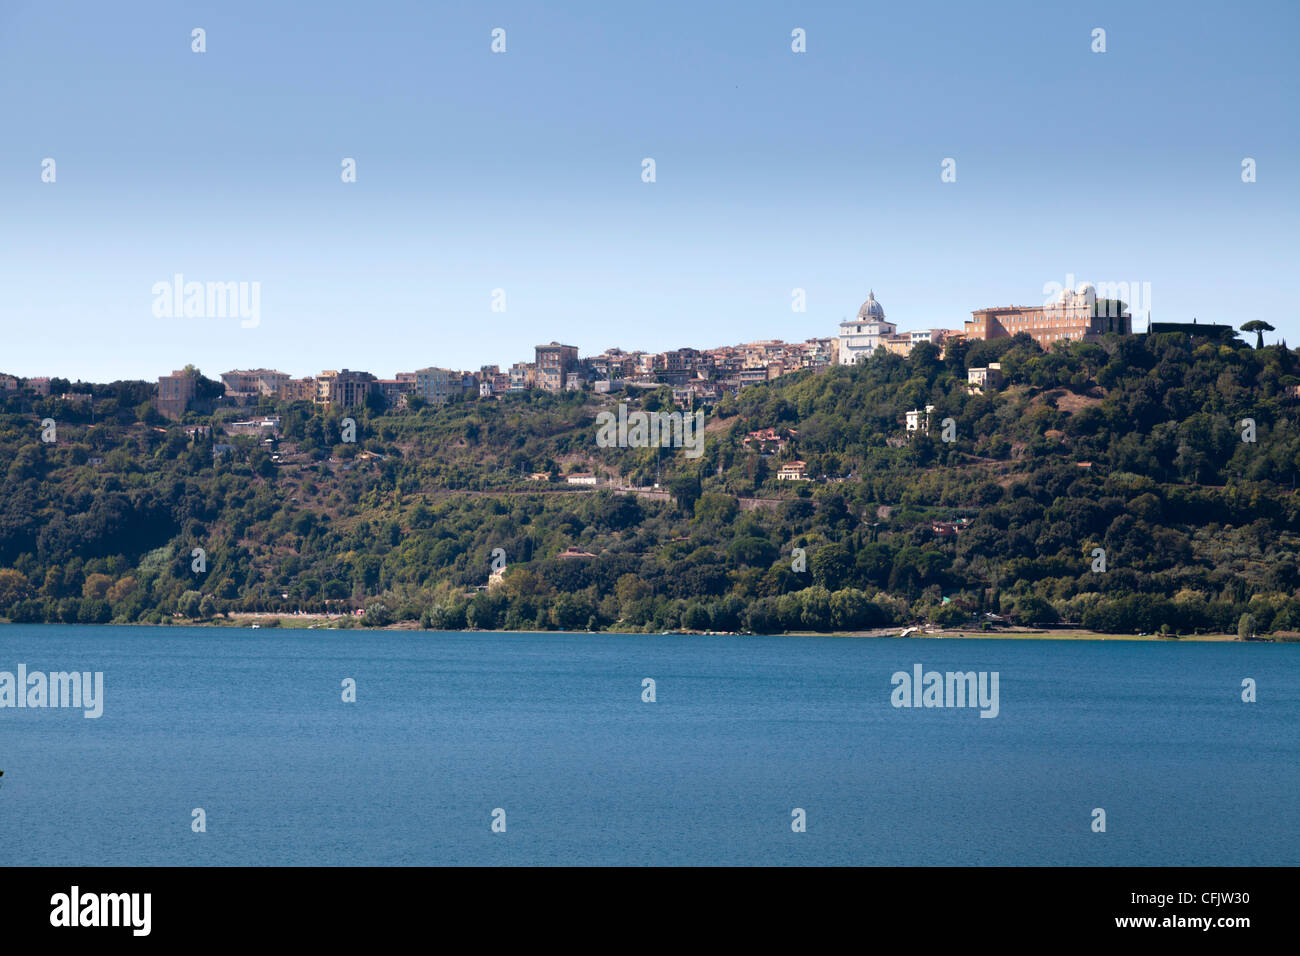 Vista panorámica del lago Albano, Castel Gandolfo, la residencia de verano del Papa Foto de stock